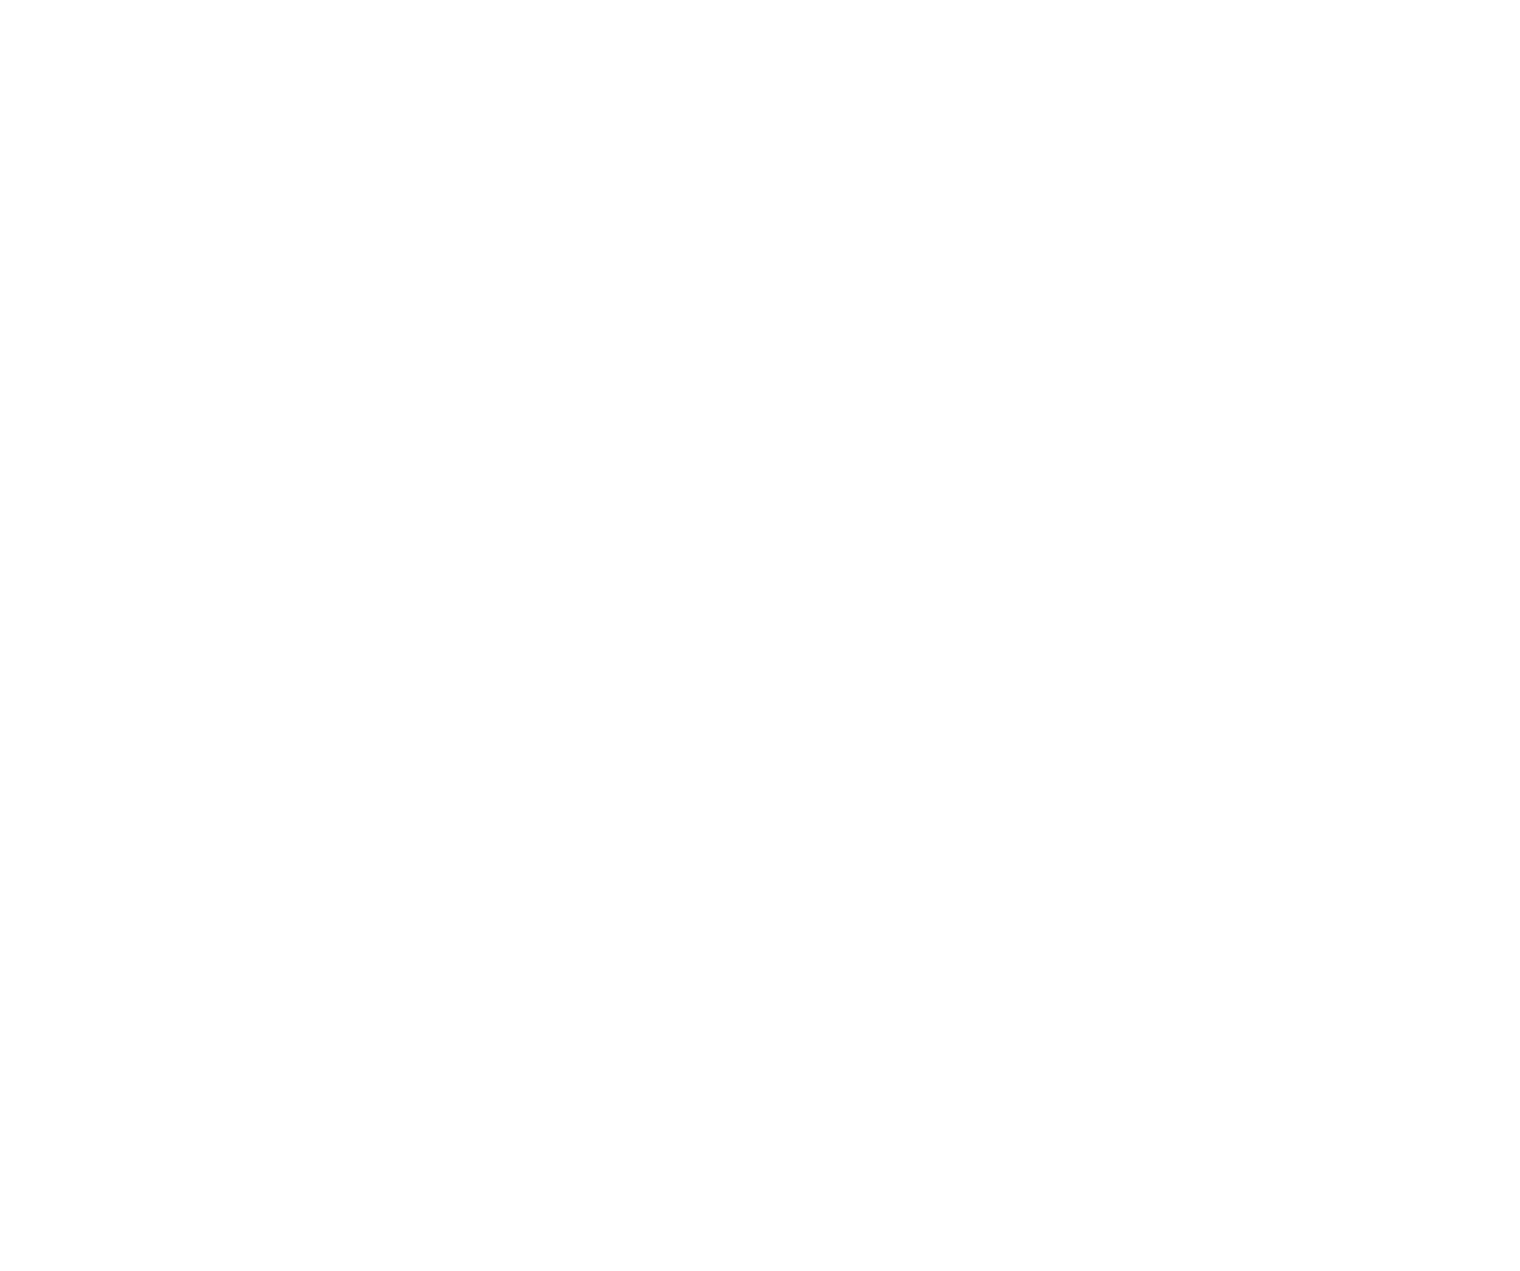 Lordstown Motors logo pour fonds sombres (PNG transparent)